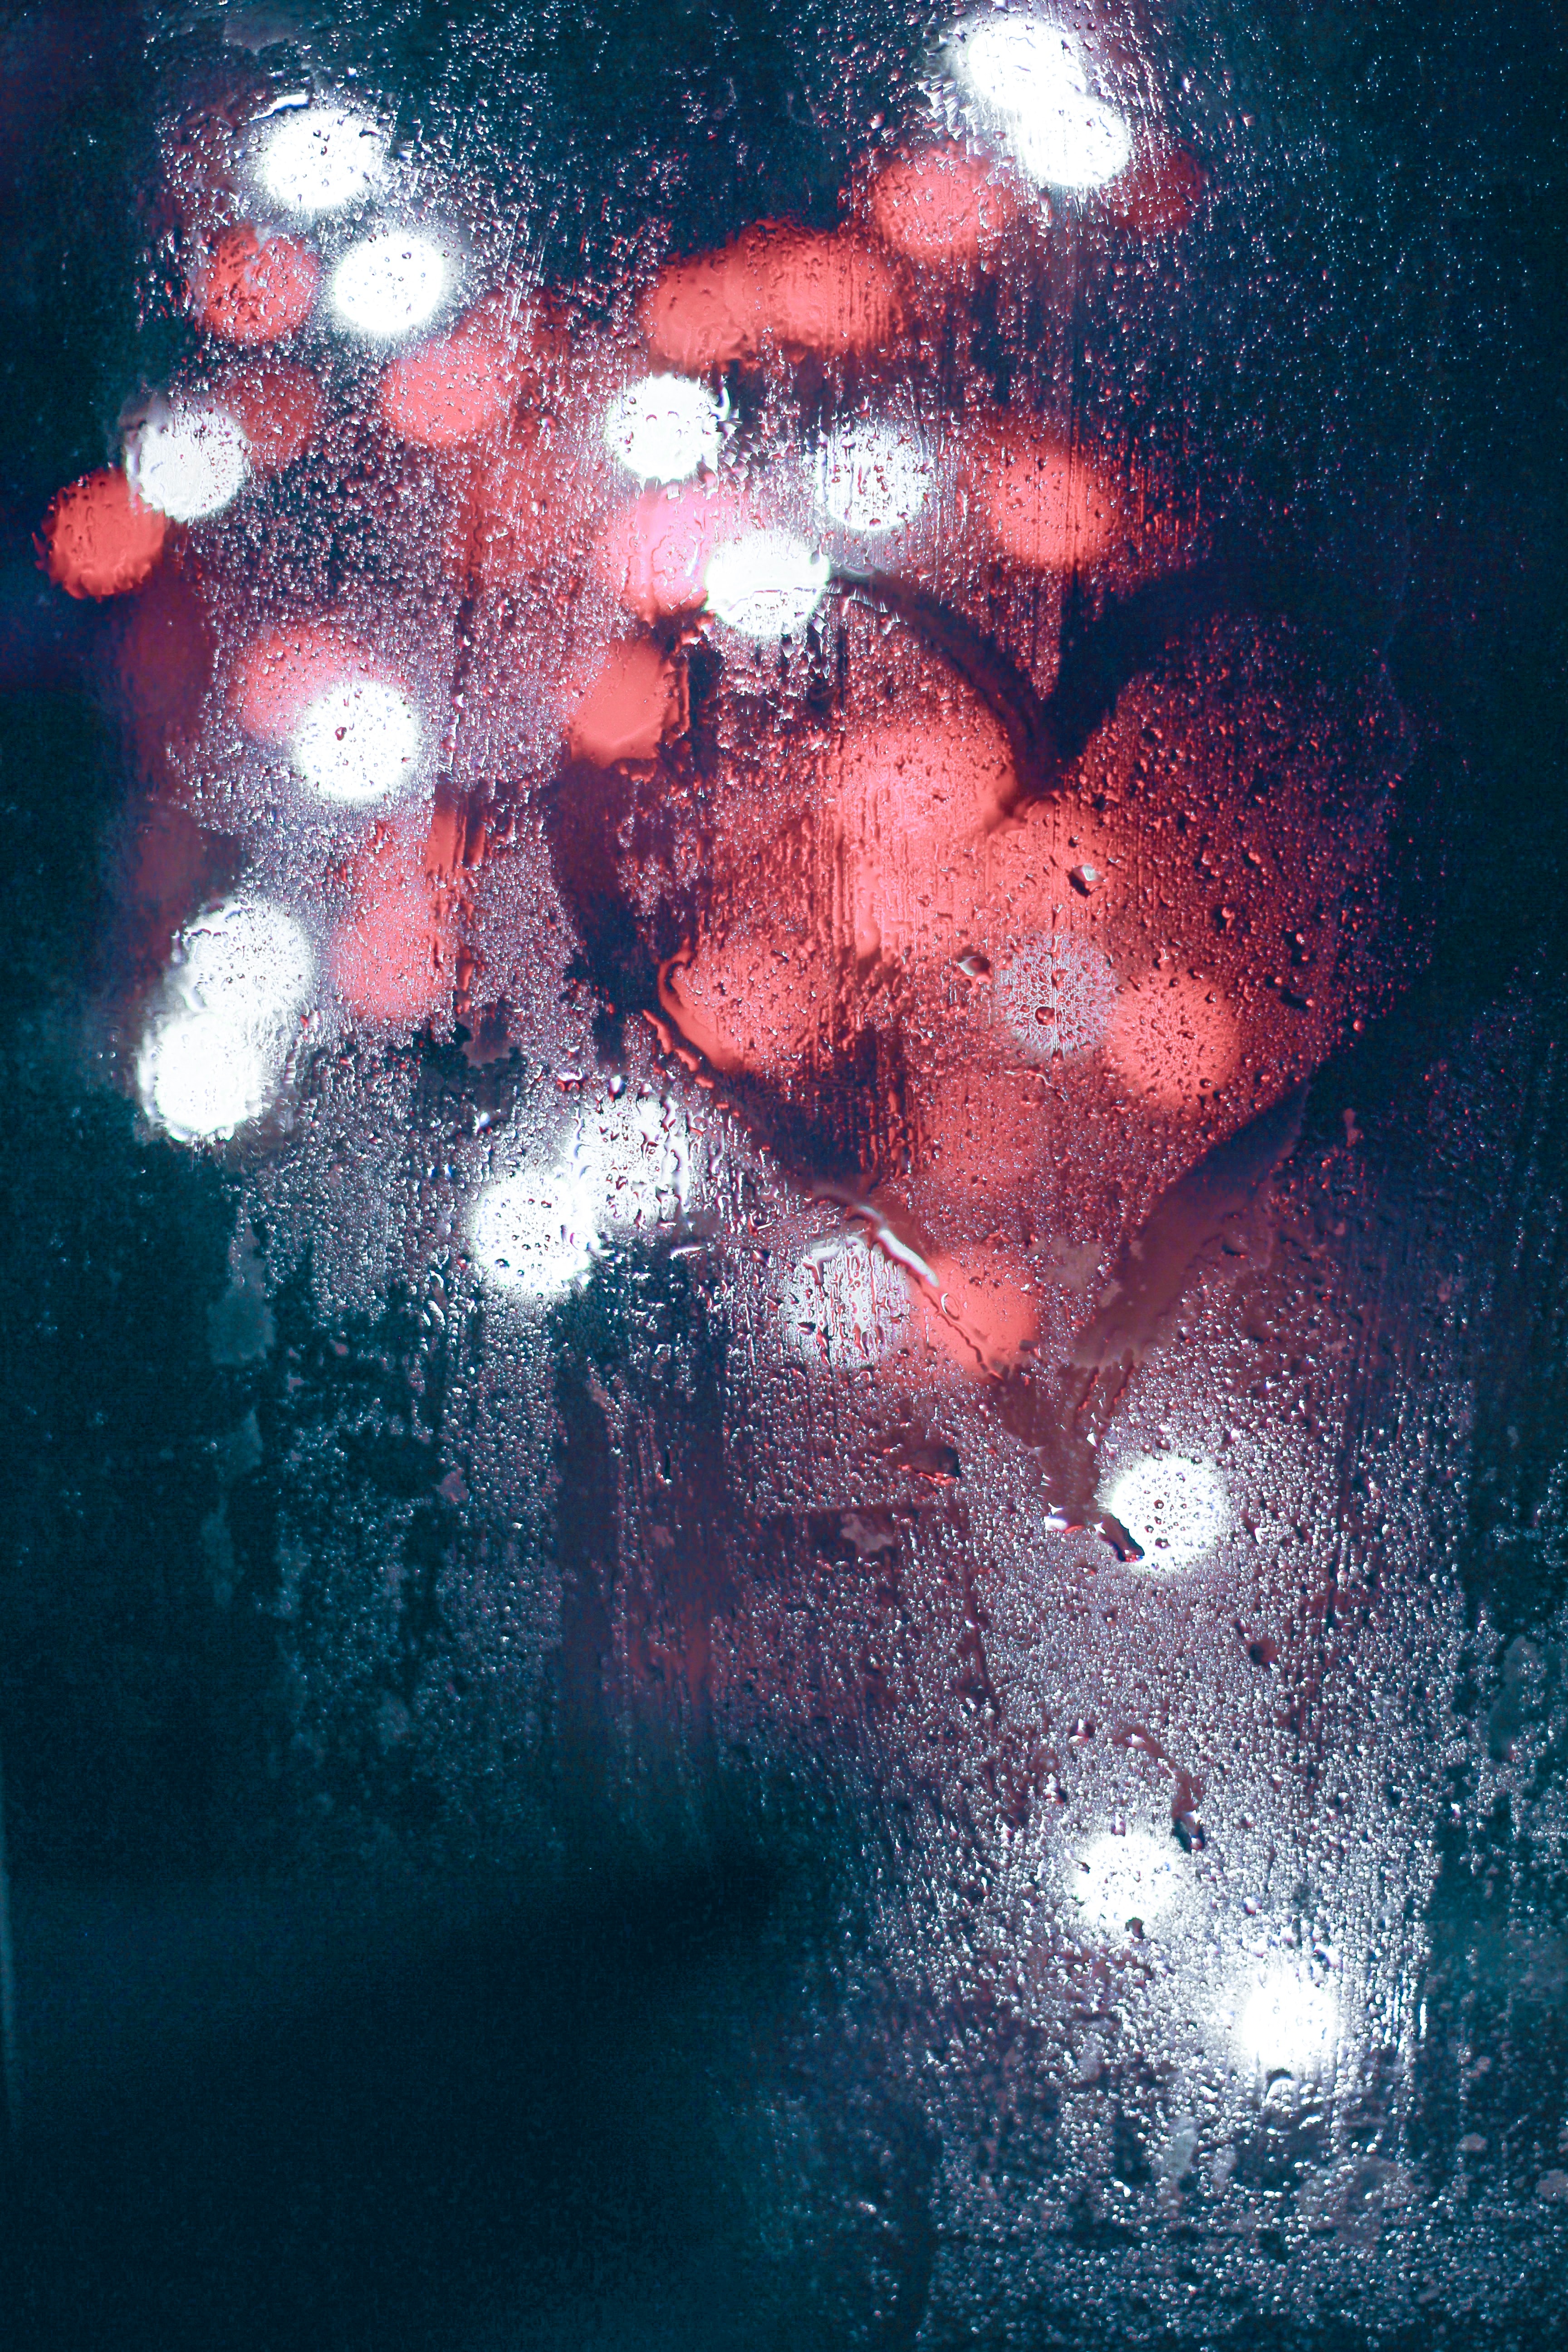 lights, love, blur, smooth, glass, heart, wet